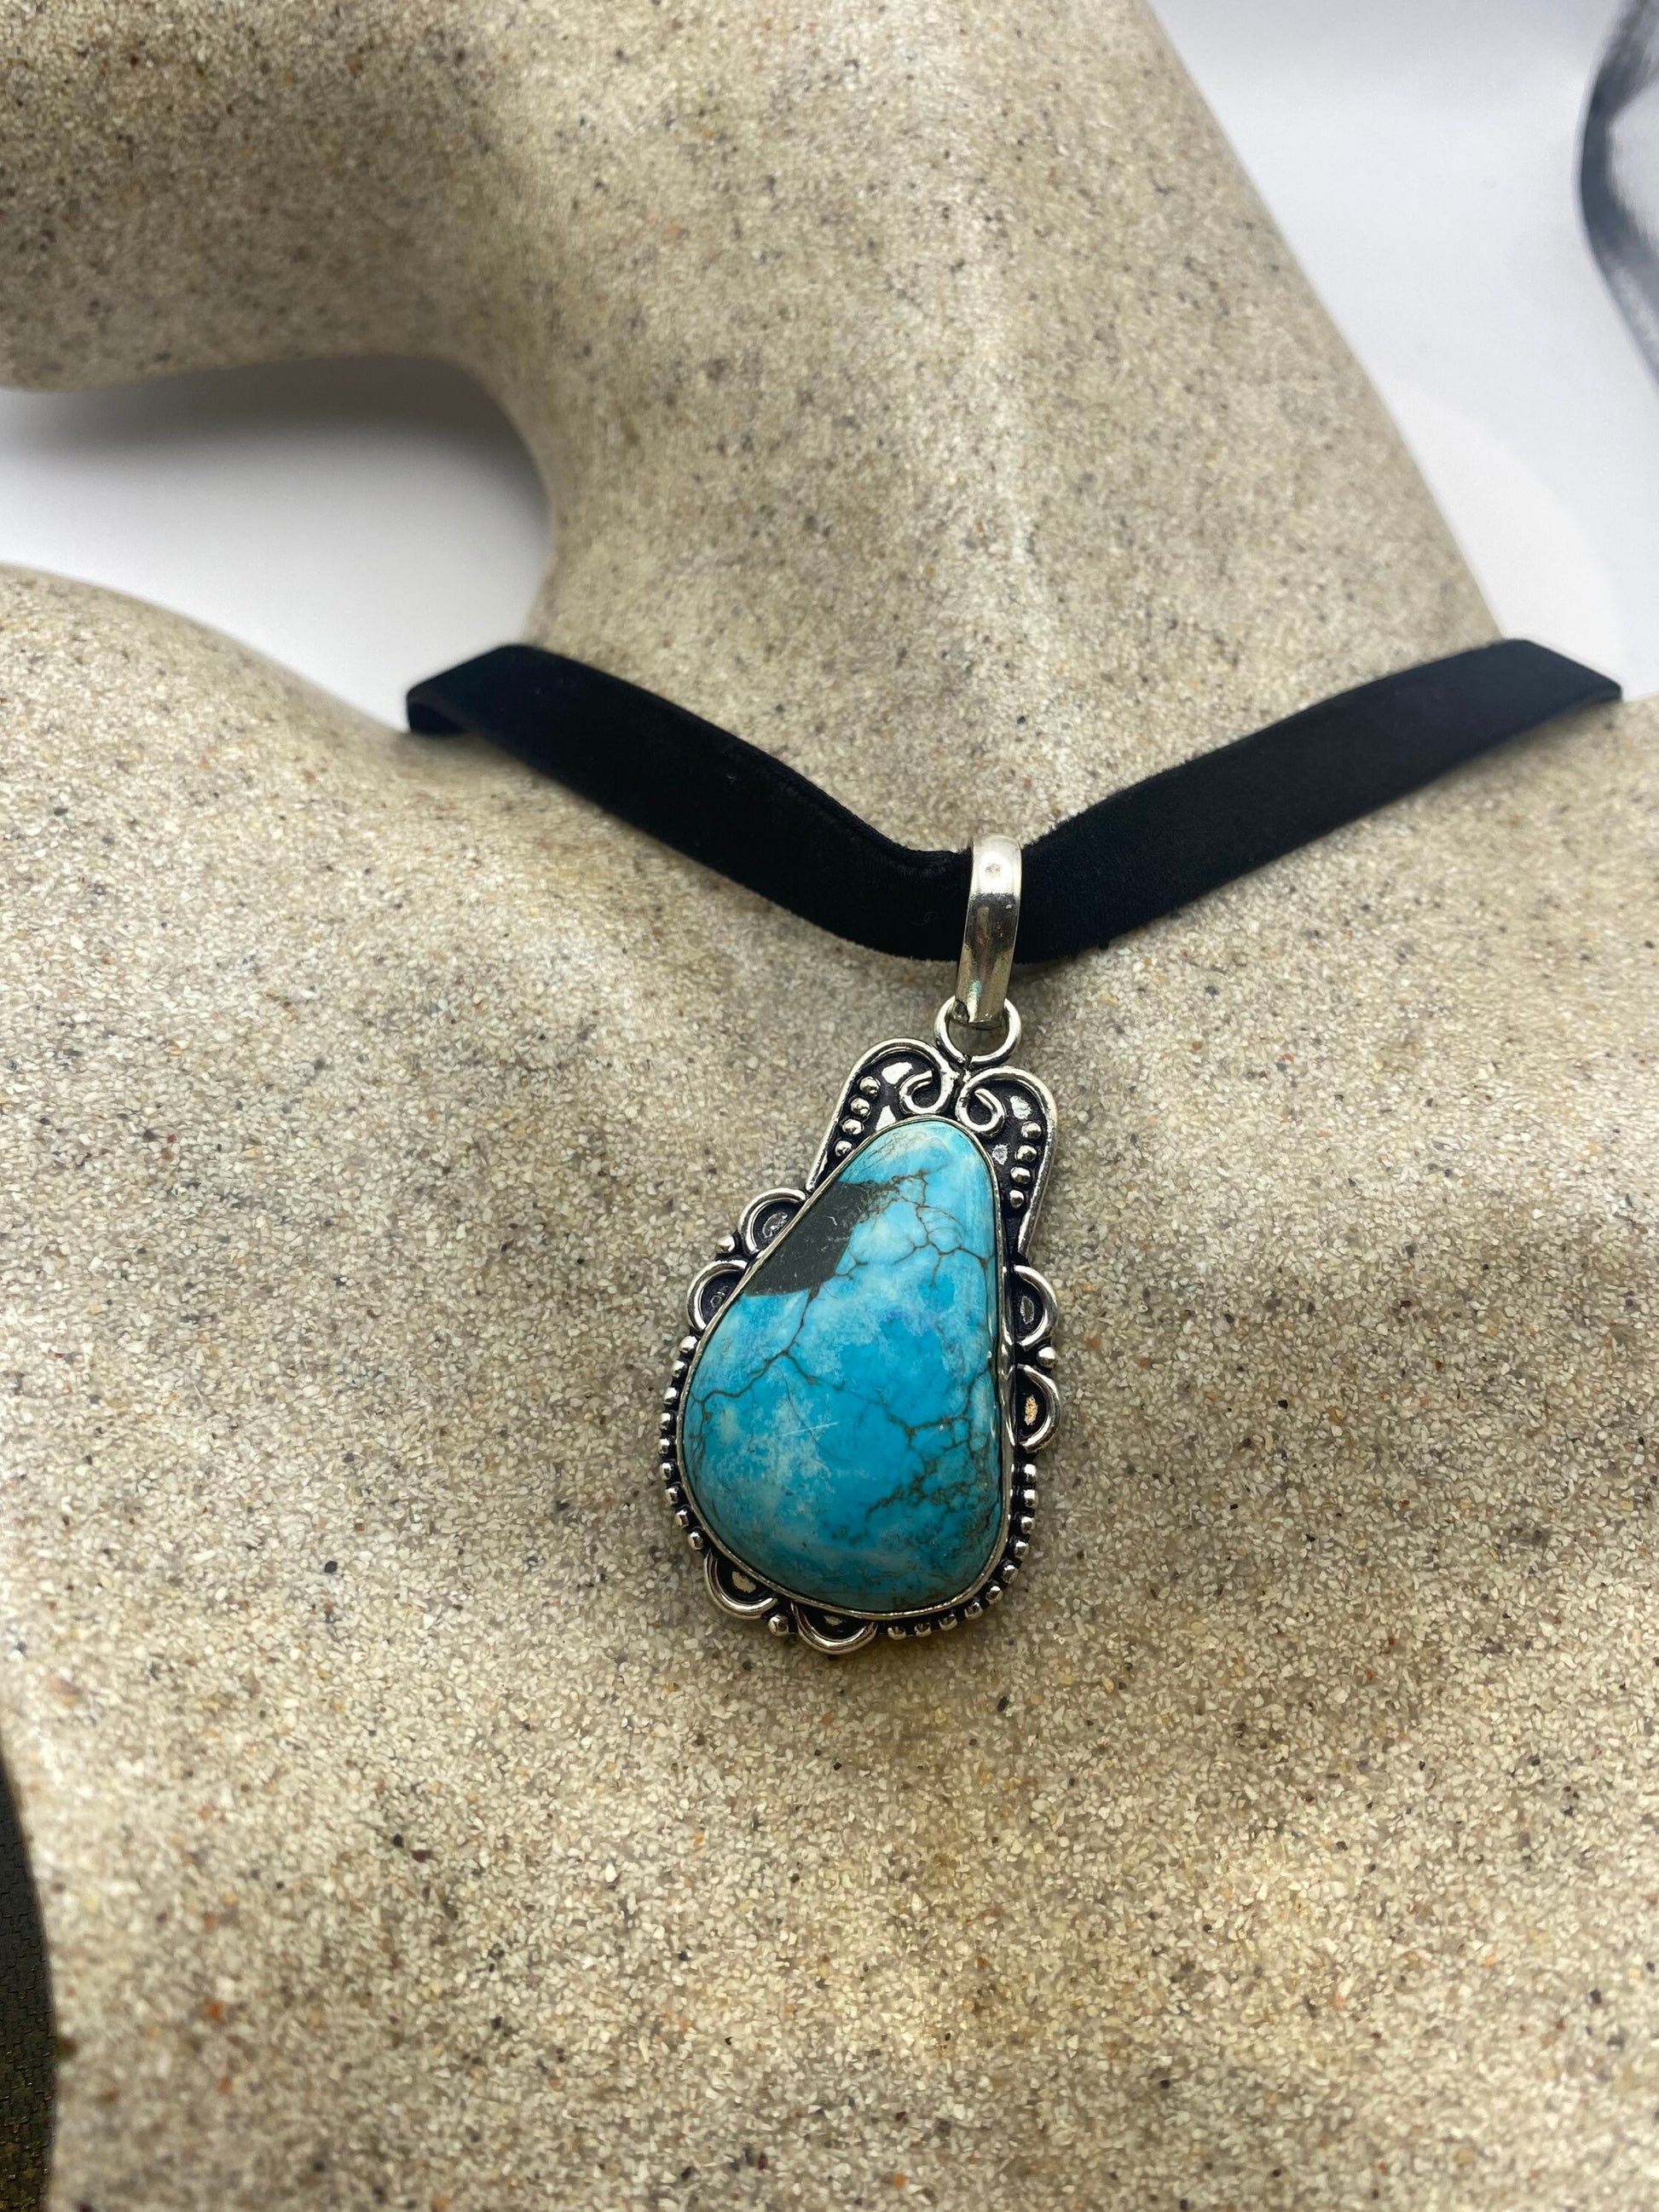 Vintage Tibetan Blue Turquoise Pendant Necklace